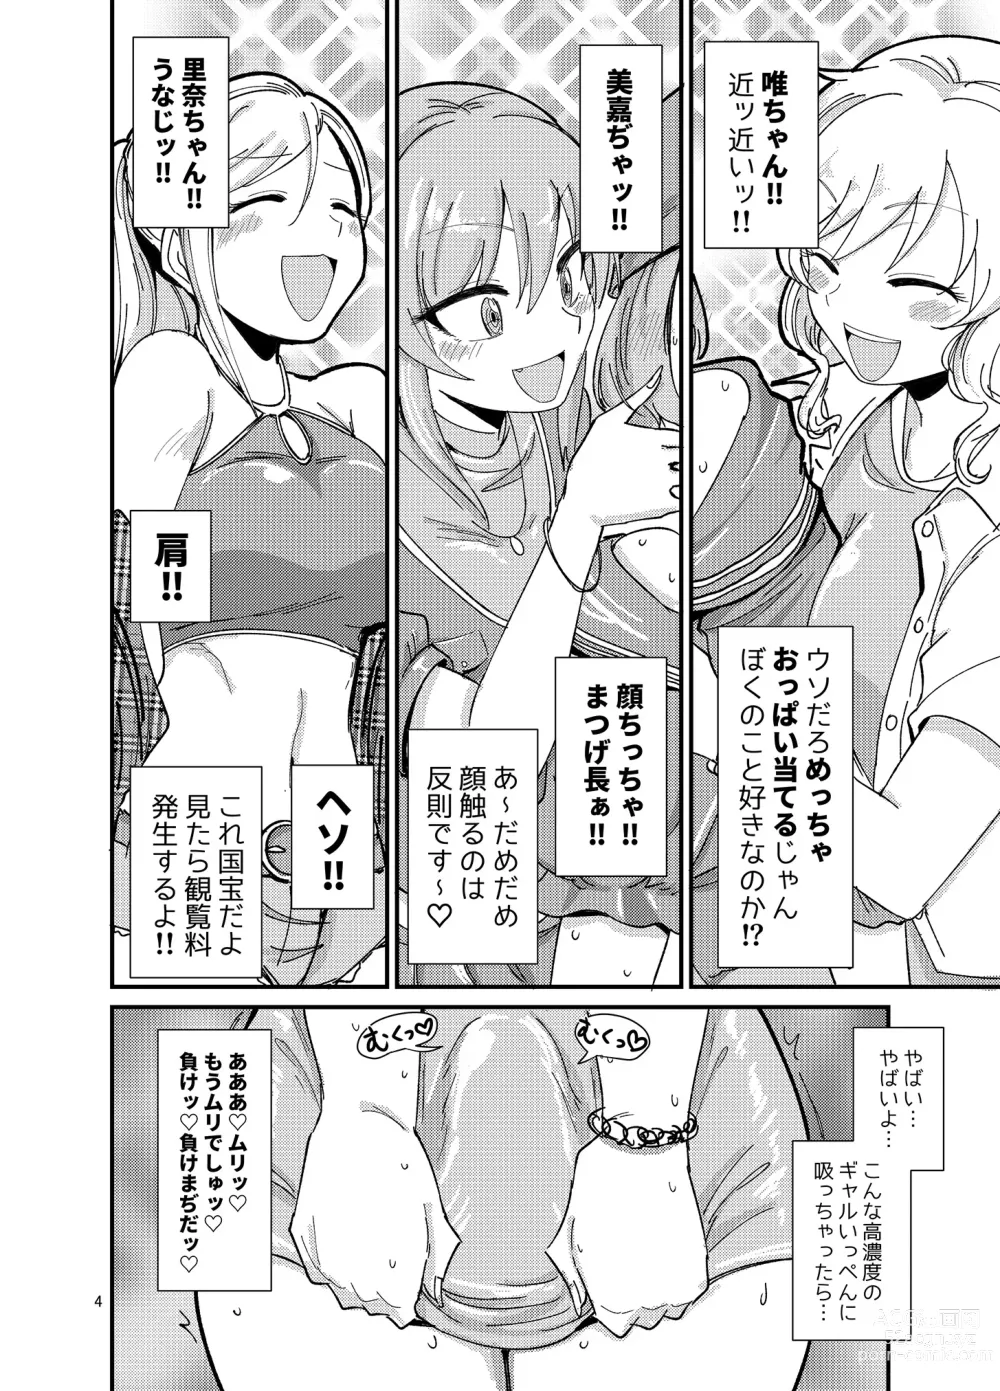 Page 4 of doujinshi Gal shika Tatan!